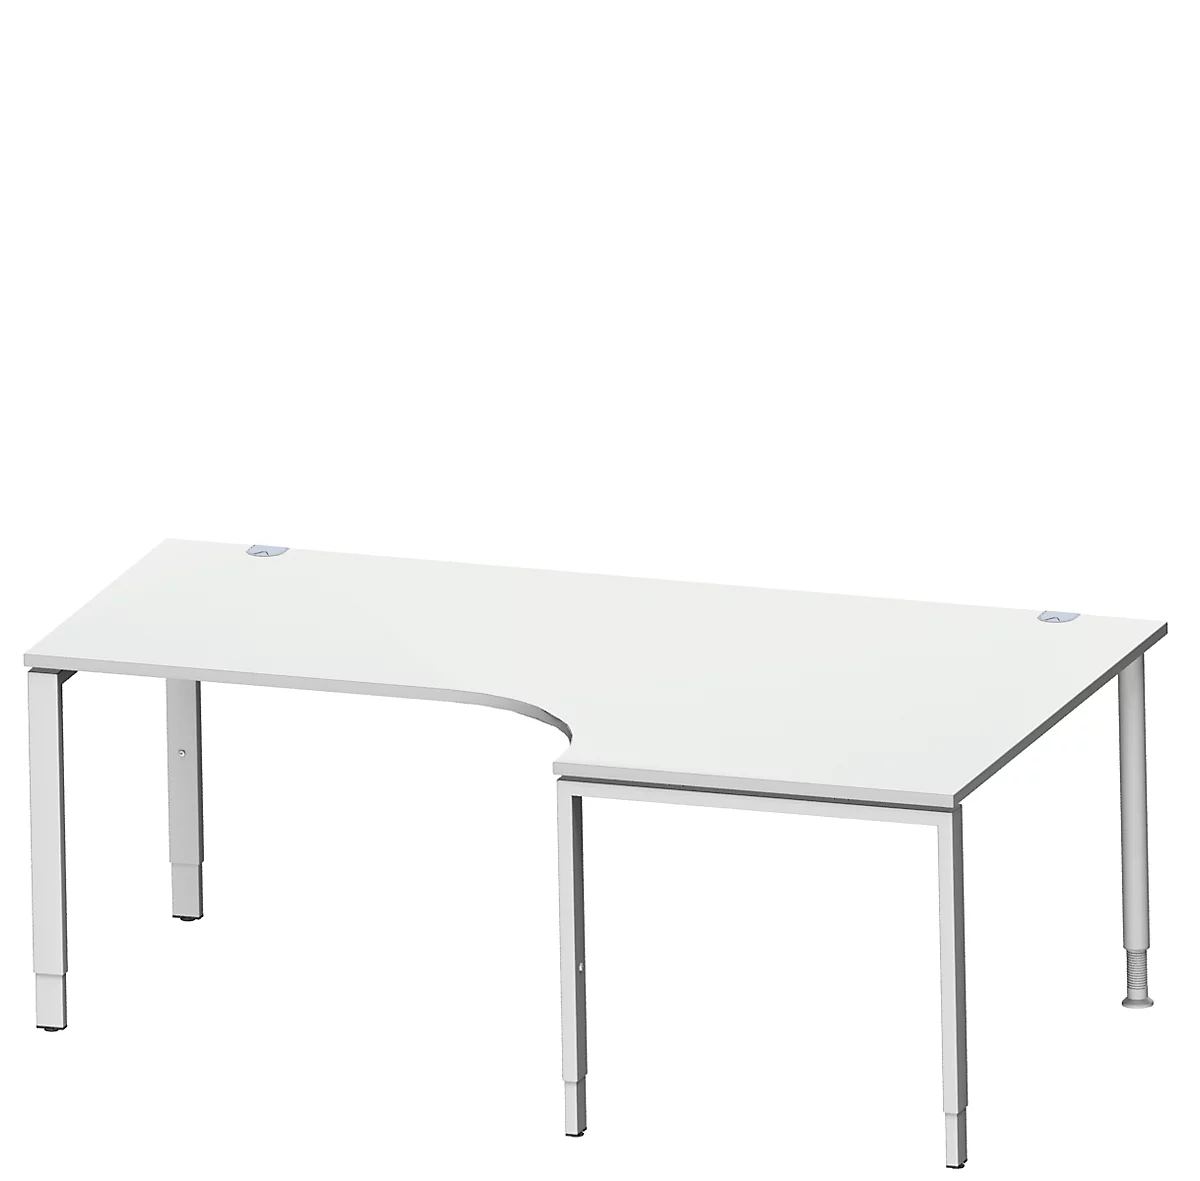 Schäfer Shop Genius escritorio angular MODENA FLEX 90°, fijación derecha, ancho 2000 mm, gris claro